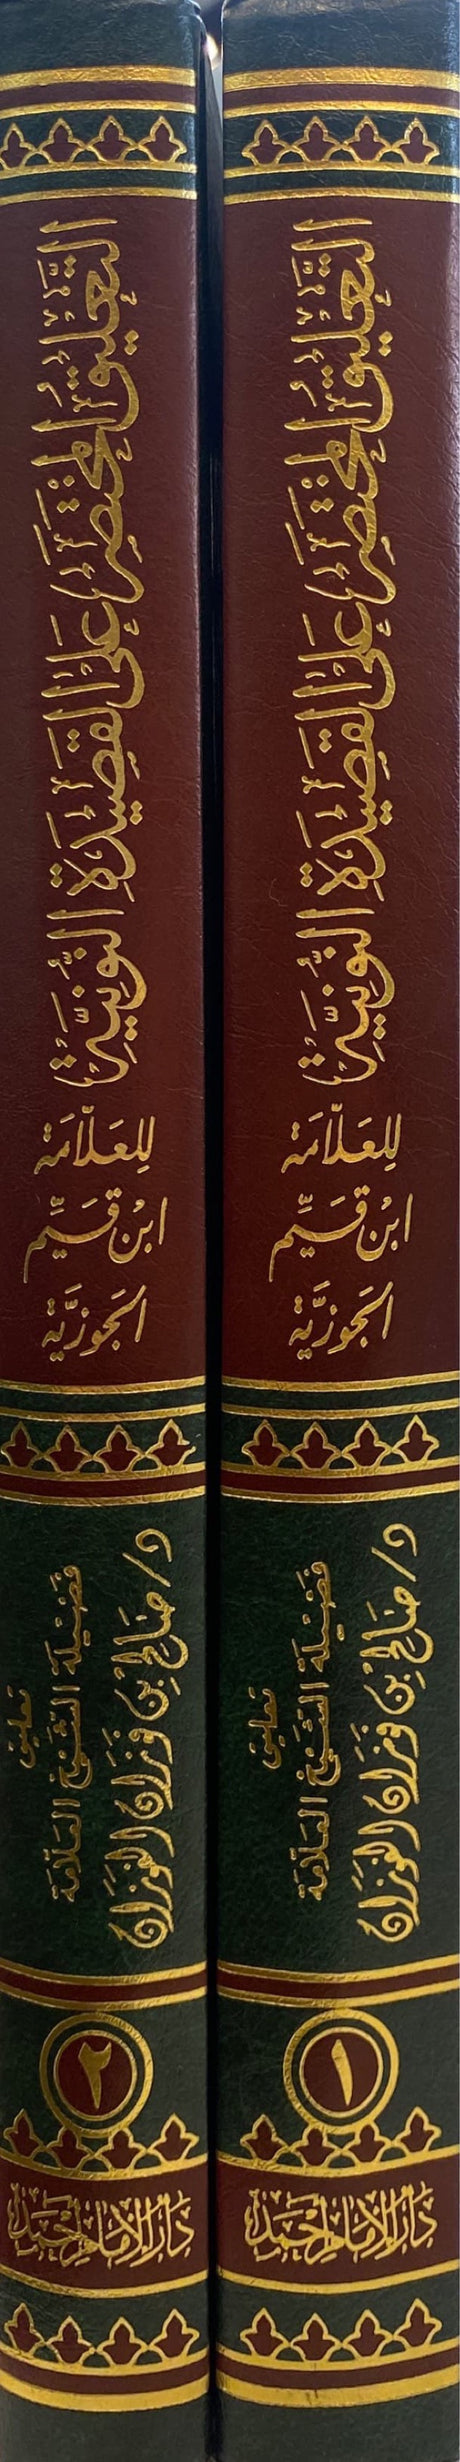 التعليق المختص على القصيدة النونية     Al Taleeq Al Mukhtas Alal Qasidatun Nuniyah (2 Volume)